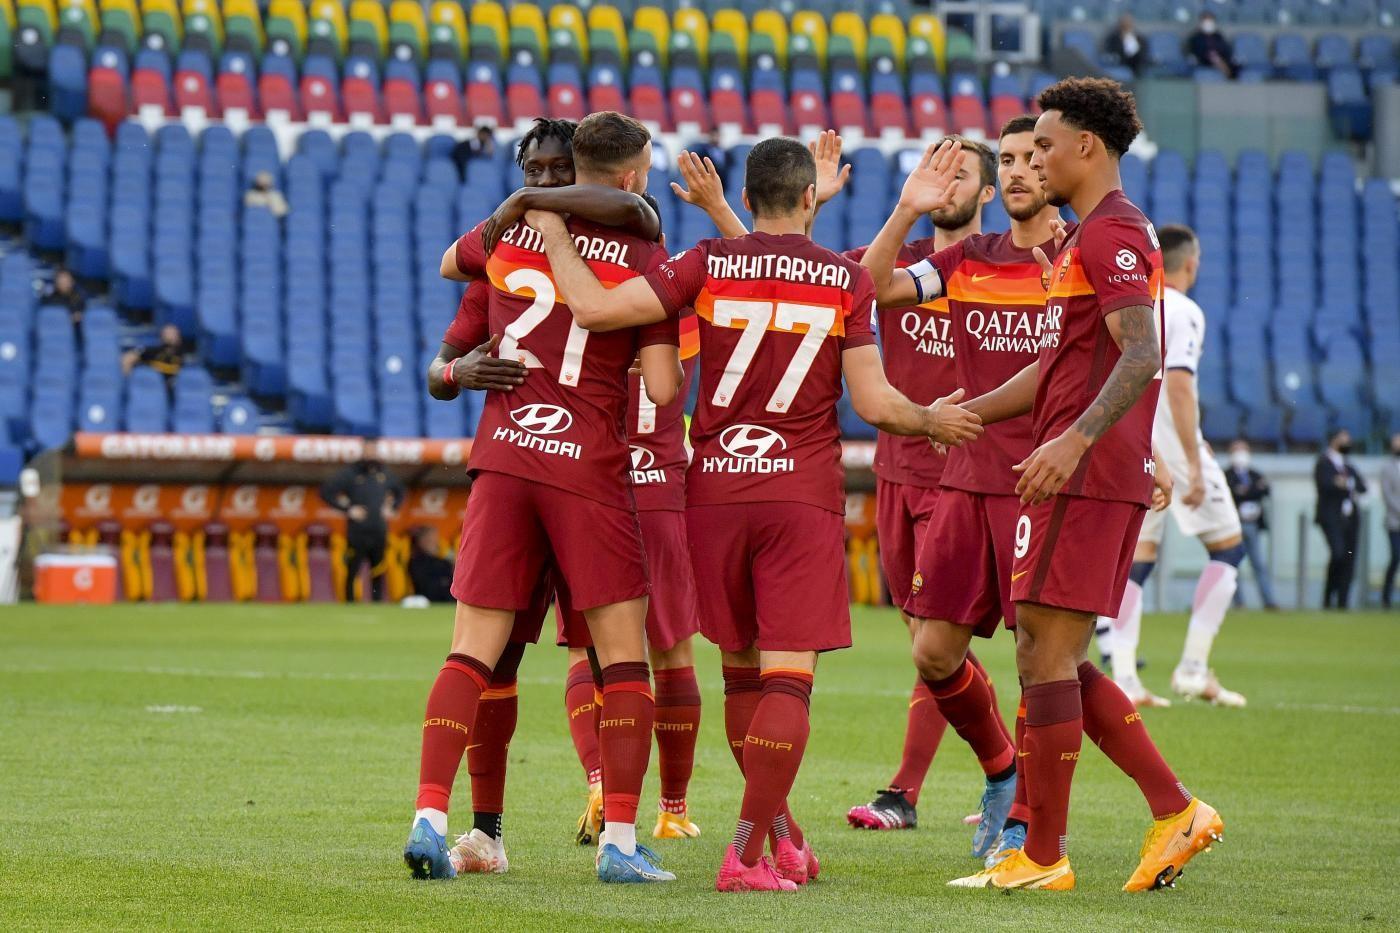 La squadra esulta dopo un gol contro il Crotone ©LaPresse